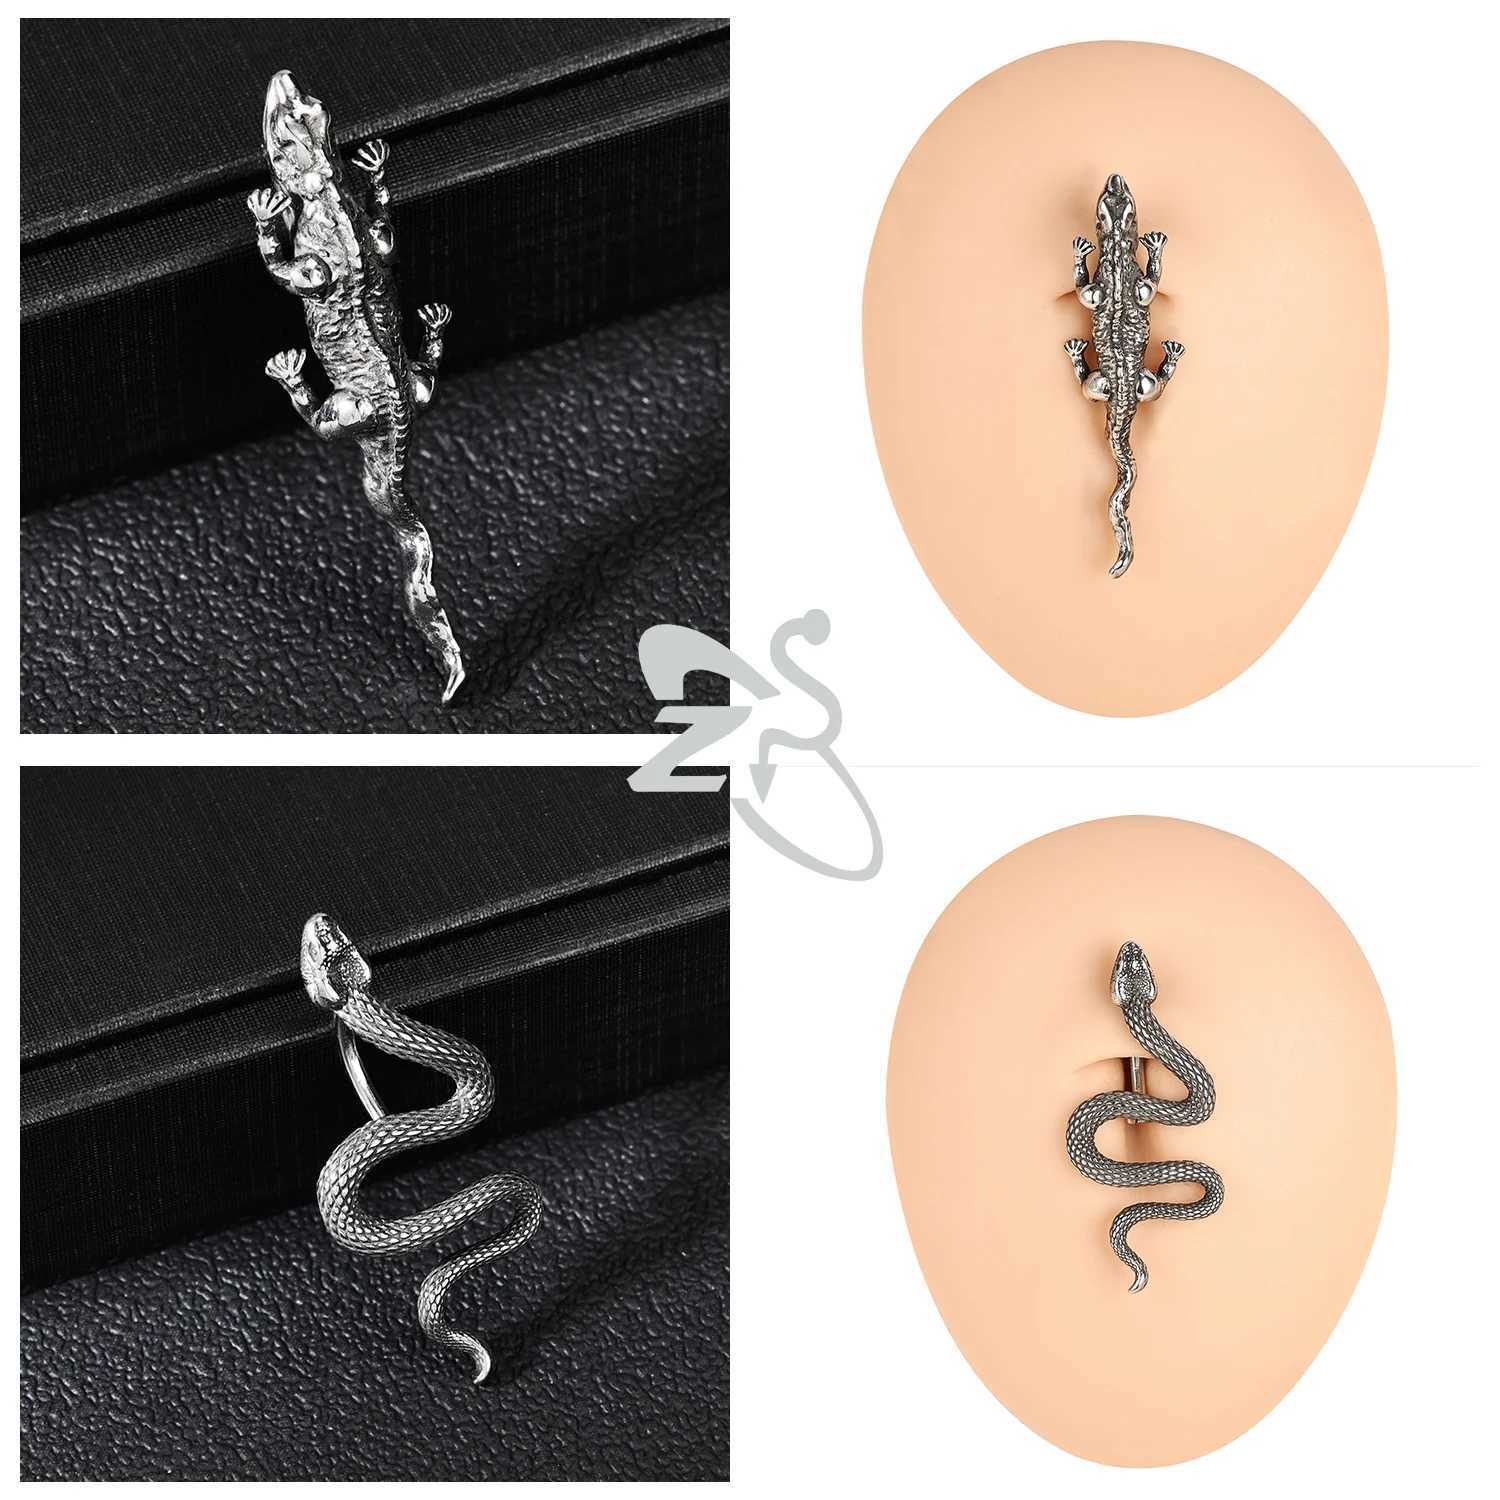 Anneaux de nombril Zs 14g Ring du ventre en acier inoxydable pour les femmes Crystal Heart Bouton Piercing 10 mm Lézard Boully Bouton Ring Jewelry D240509